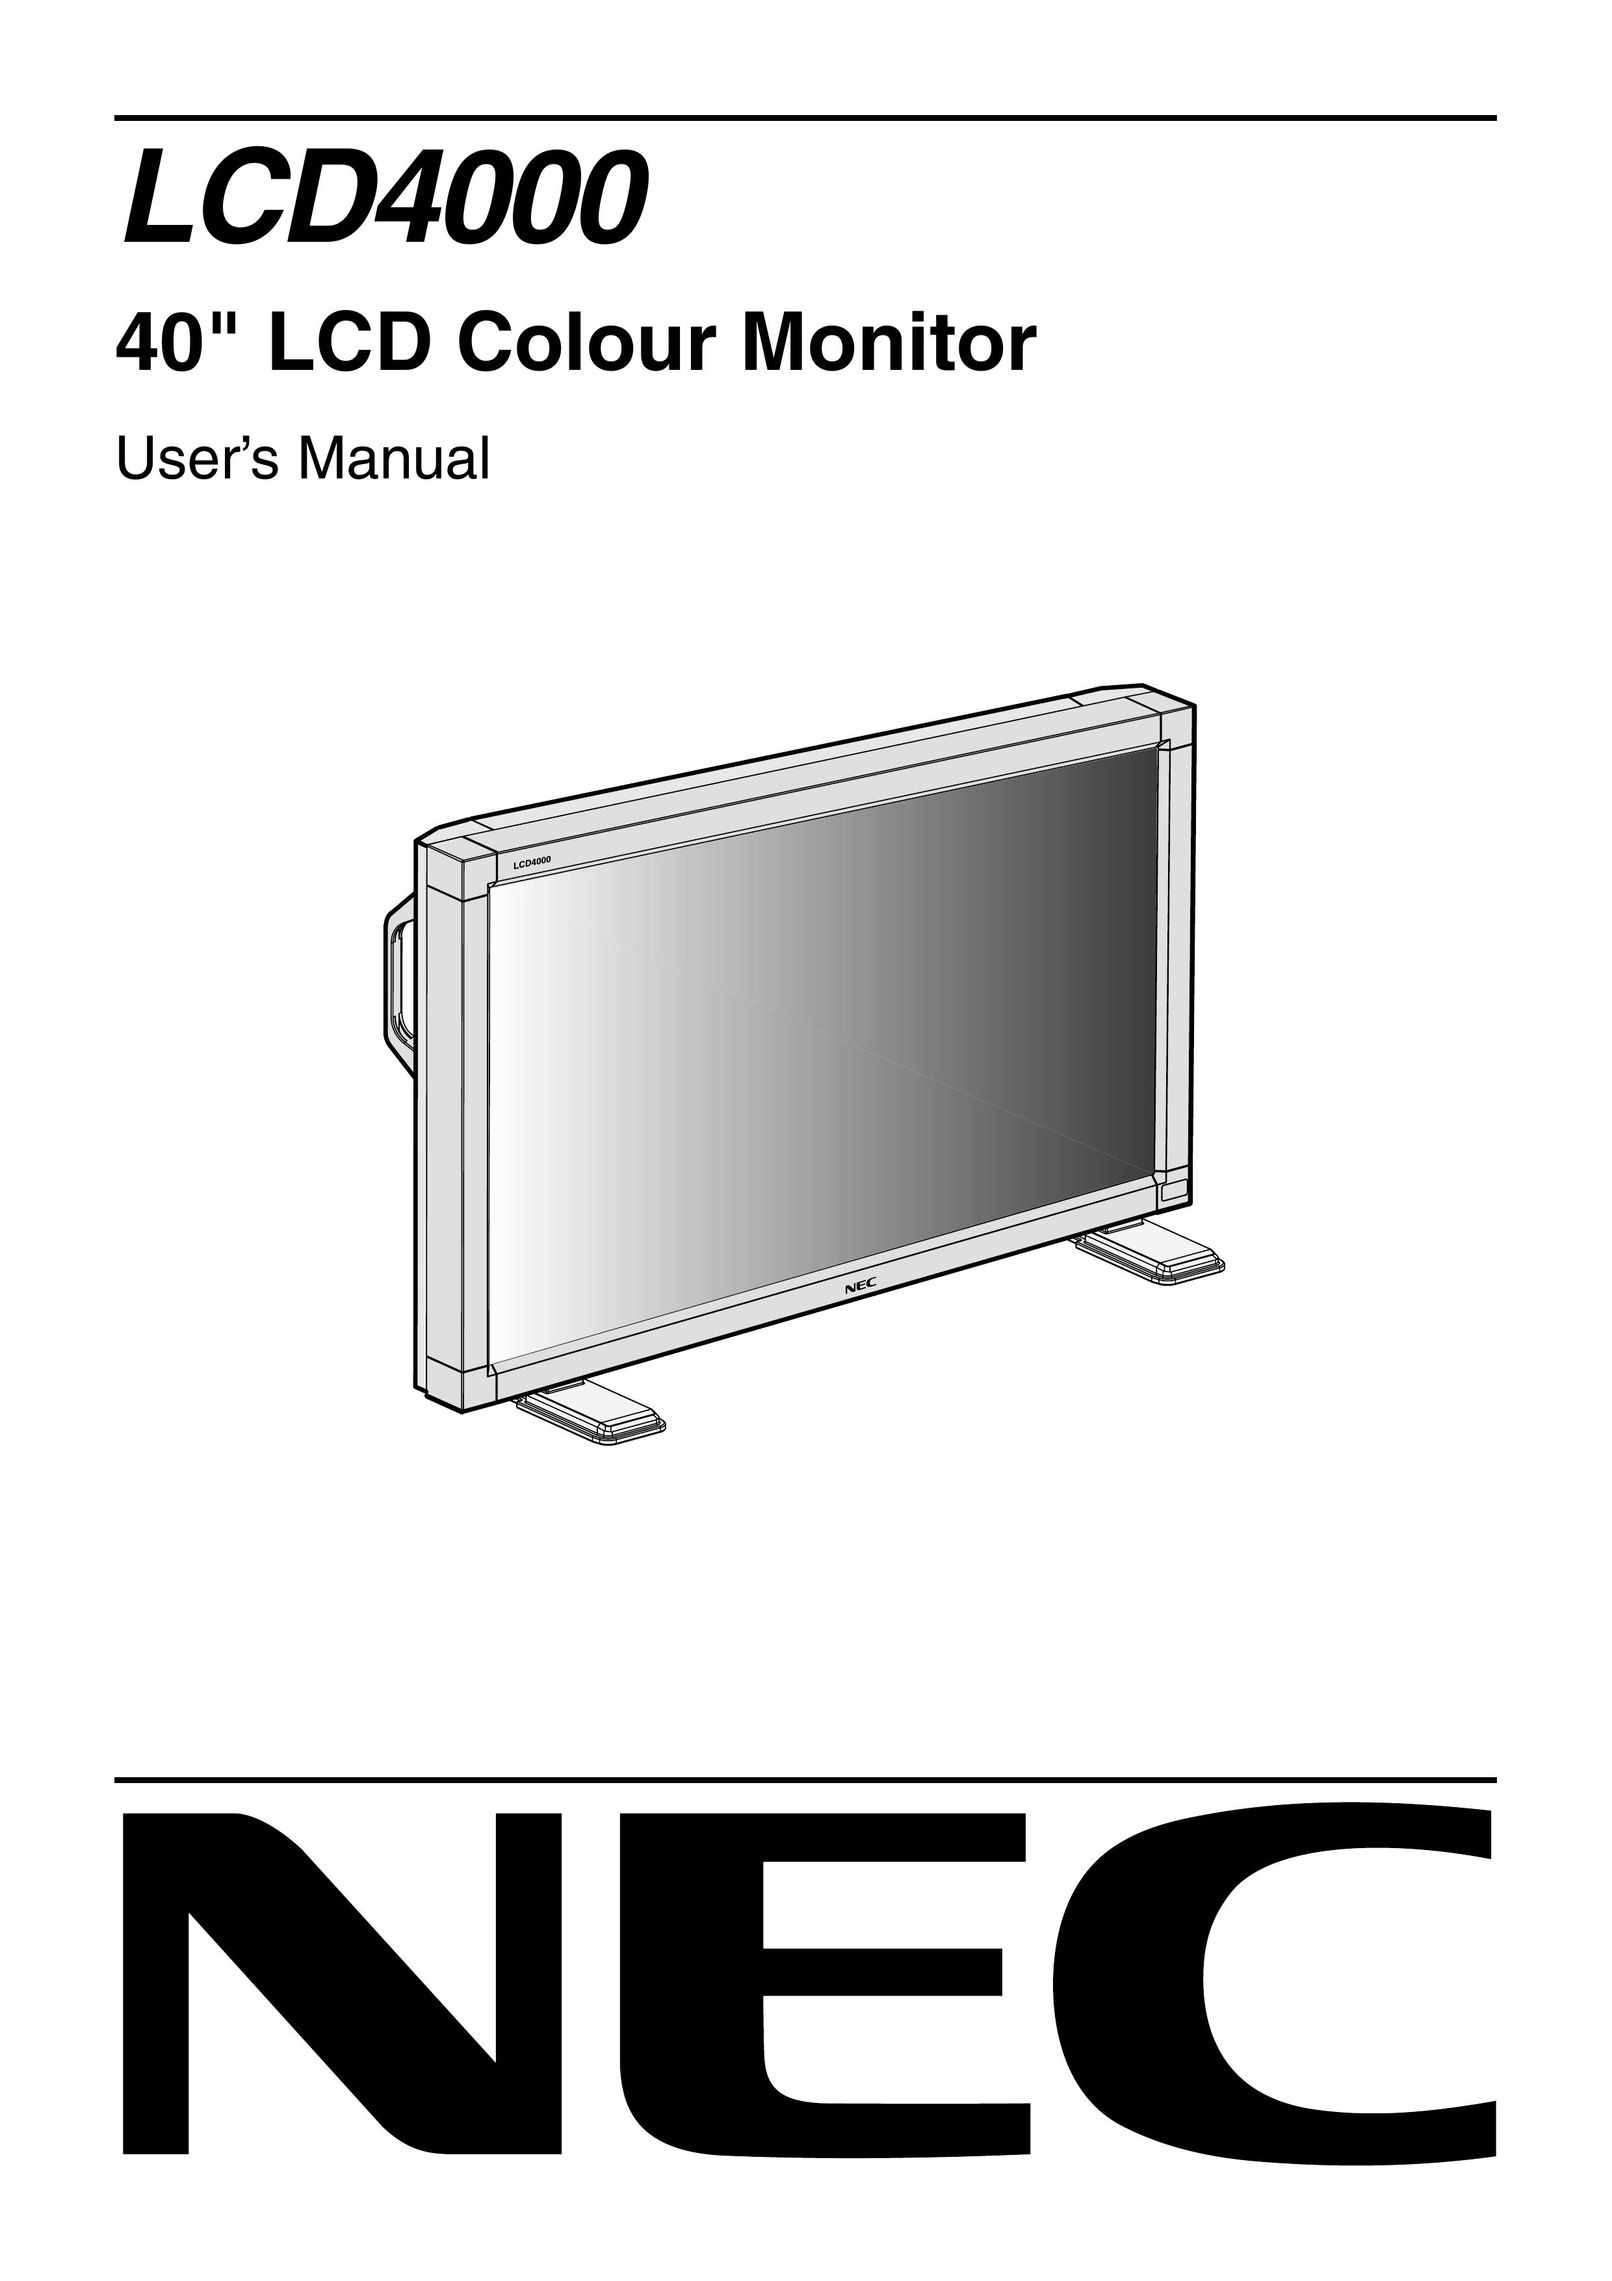 Mitsubishi Electronics LCD4000 Computer Monitor User Manual